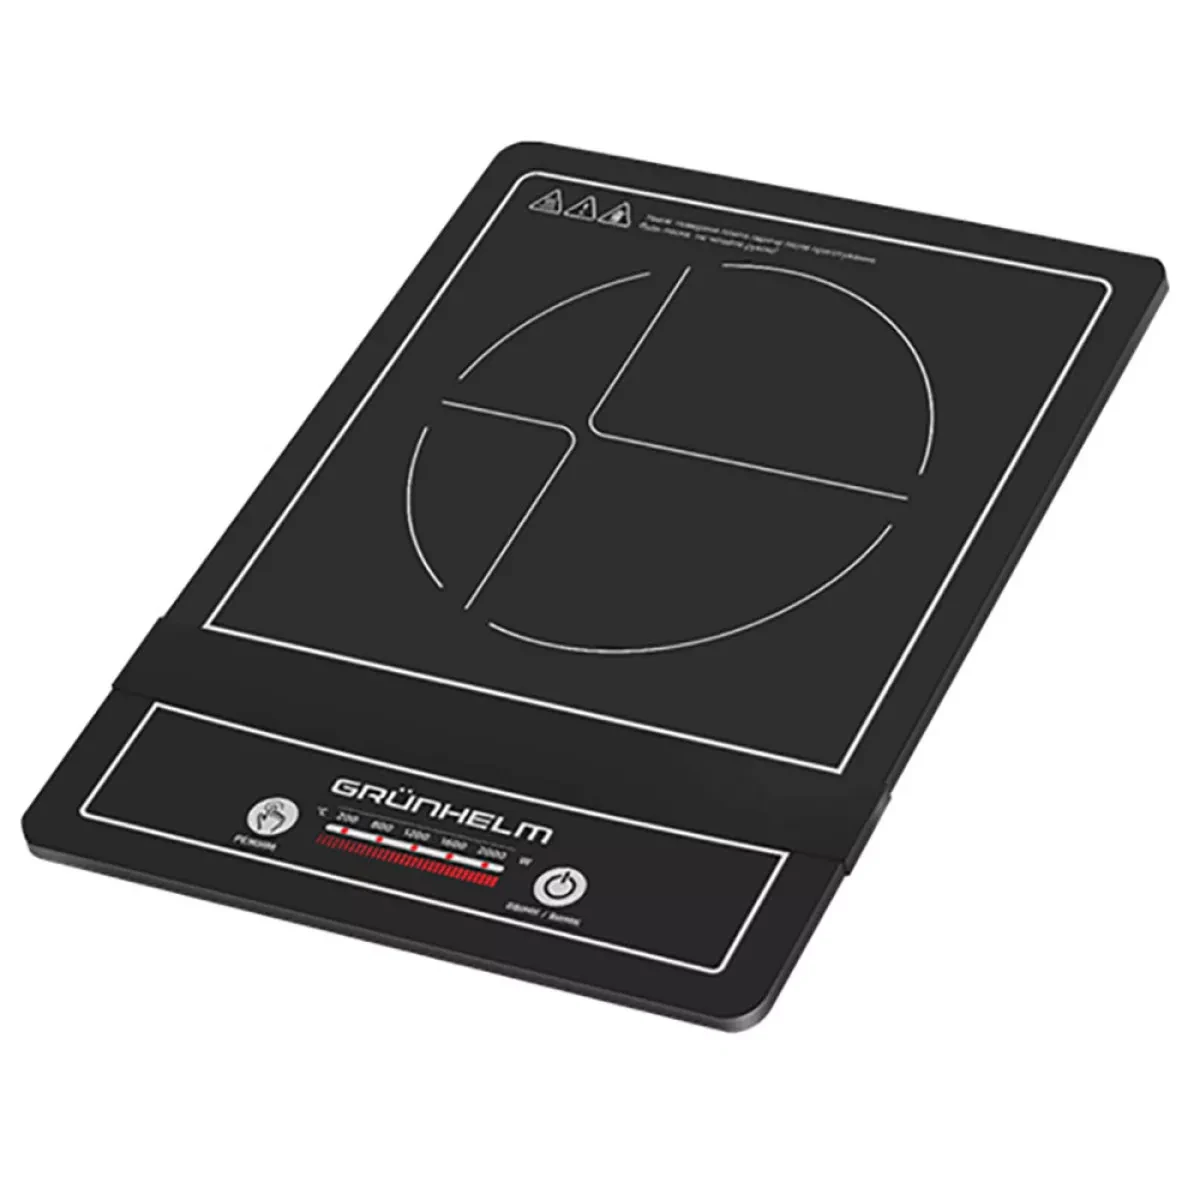 Індукційна плита Grunhelm GI-909 | Склокераміка | 2.0 кВт | 60-200 °C | Посуд 120-200 мм | 4 програми | Дисплей | Таймер